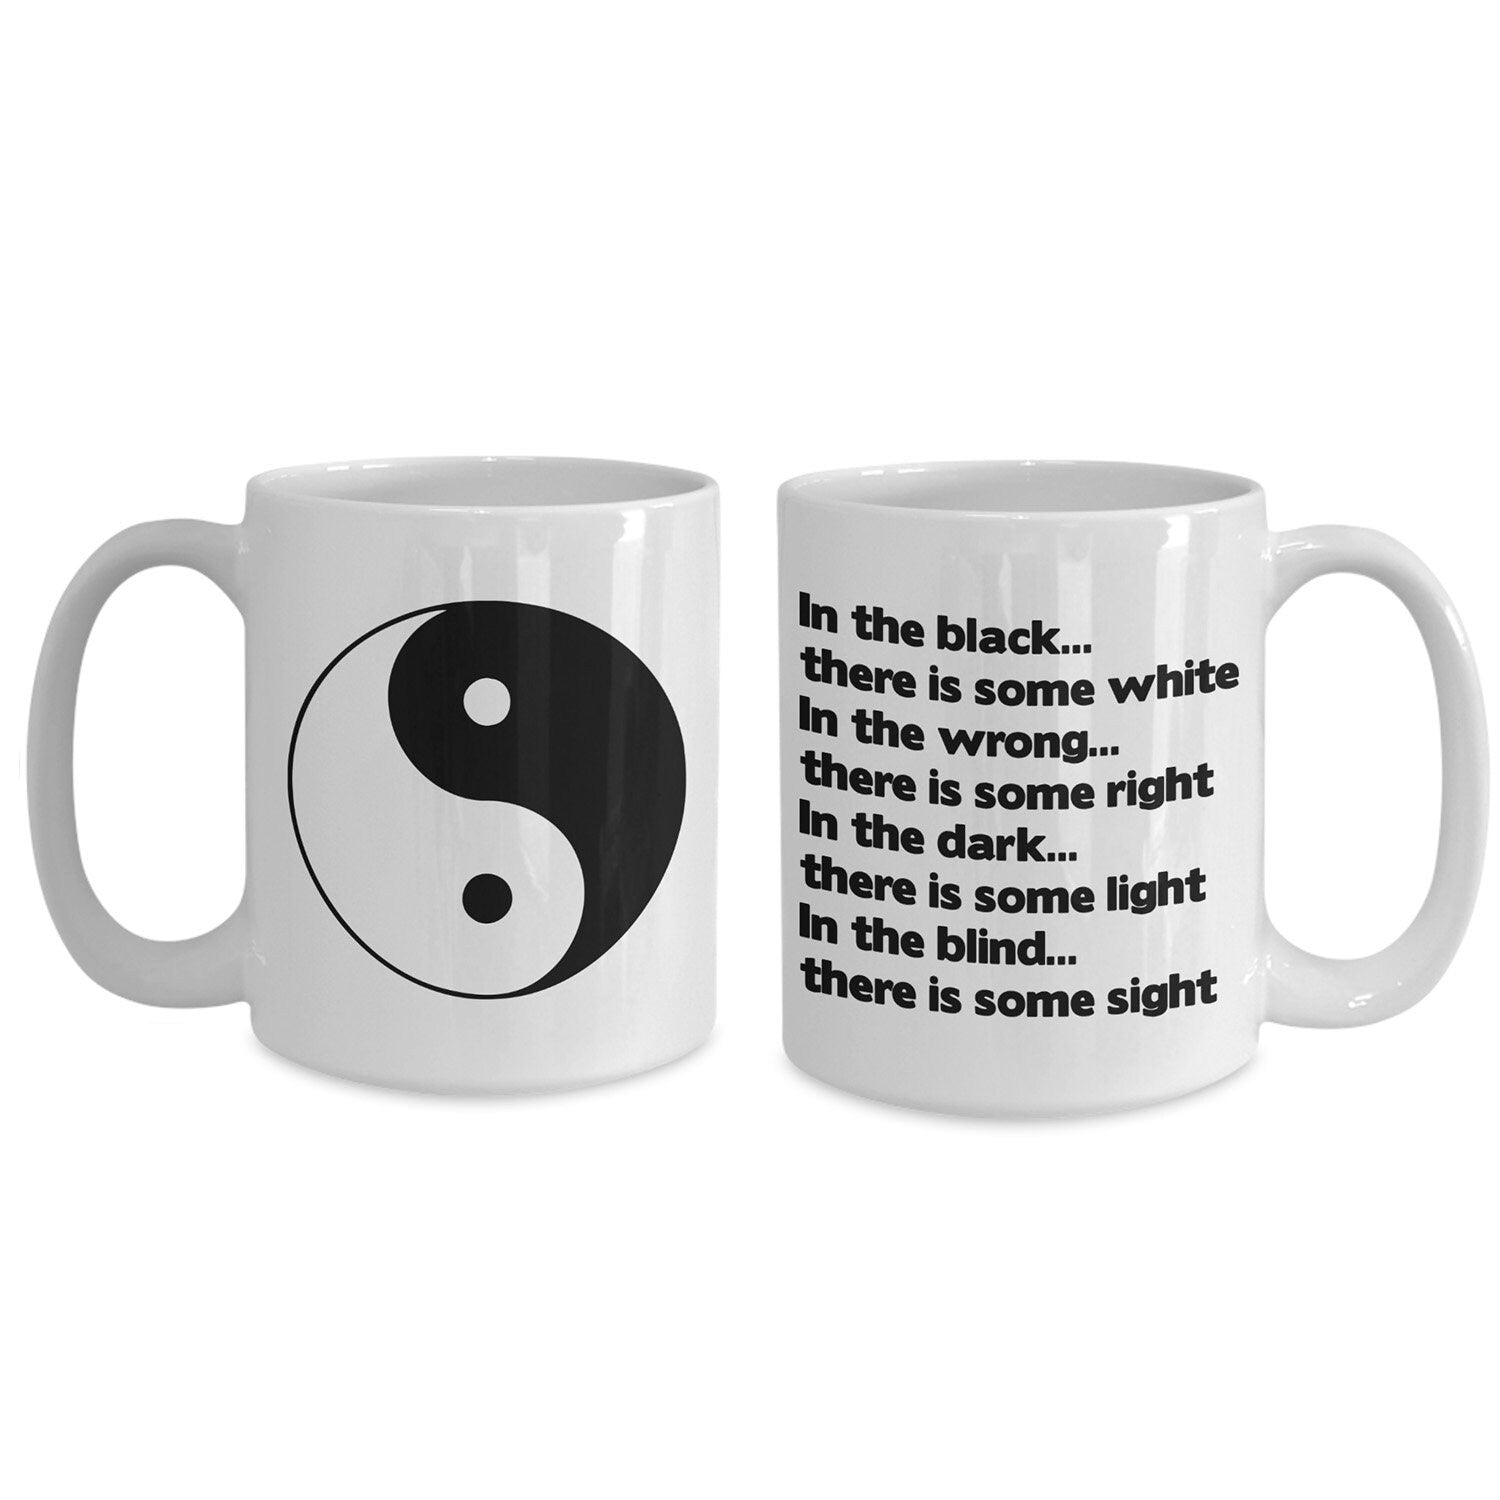 Yin Yang Coffee Mug yin yang mug yoga mug spiritual mug meditation mug yin yang saying mug spiritual gift cheap gifts yoga gifts meditation